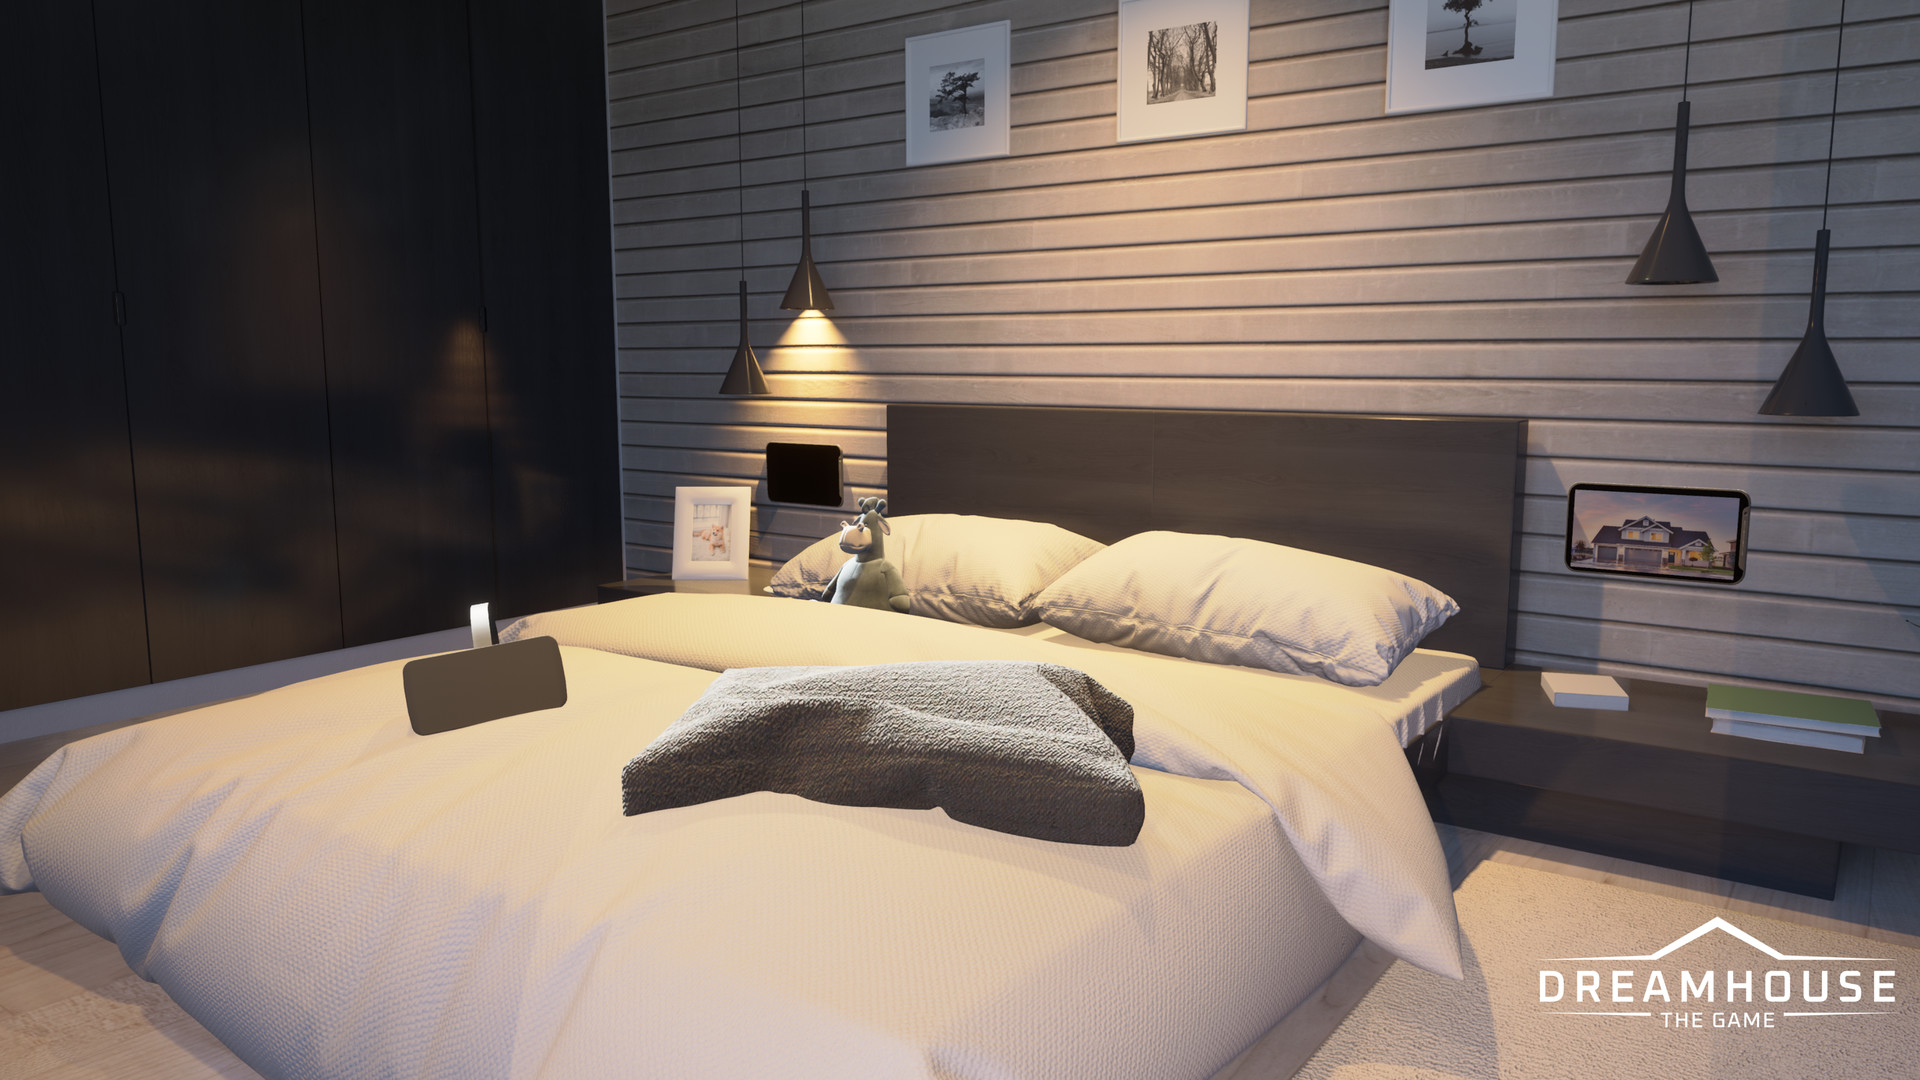 Скриншоты и трейлер Dreamhouse: The Game — симулятора строительства домов на Unreal Engine 5